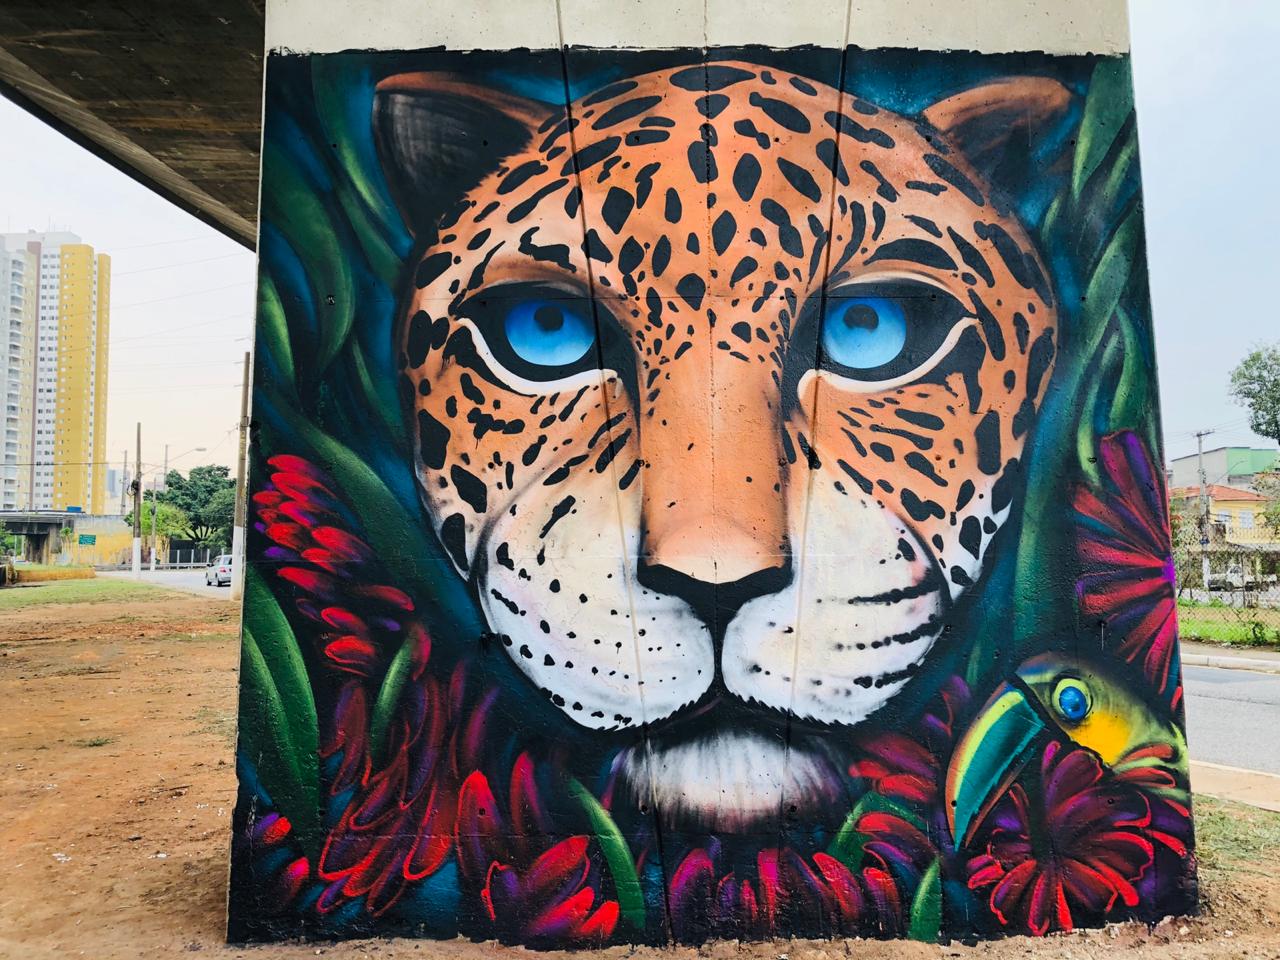 Os muros da região receberam grafites com a temática de animais em extinção